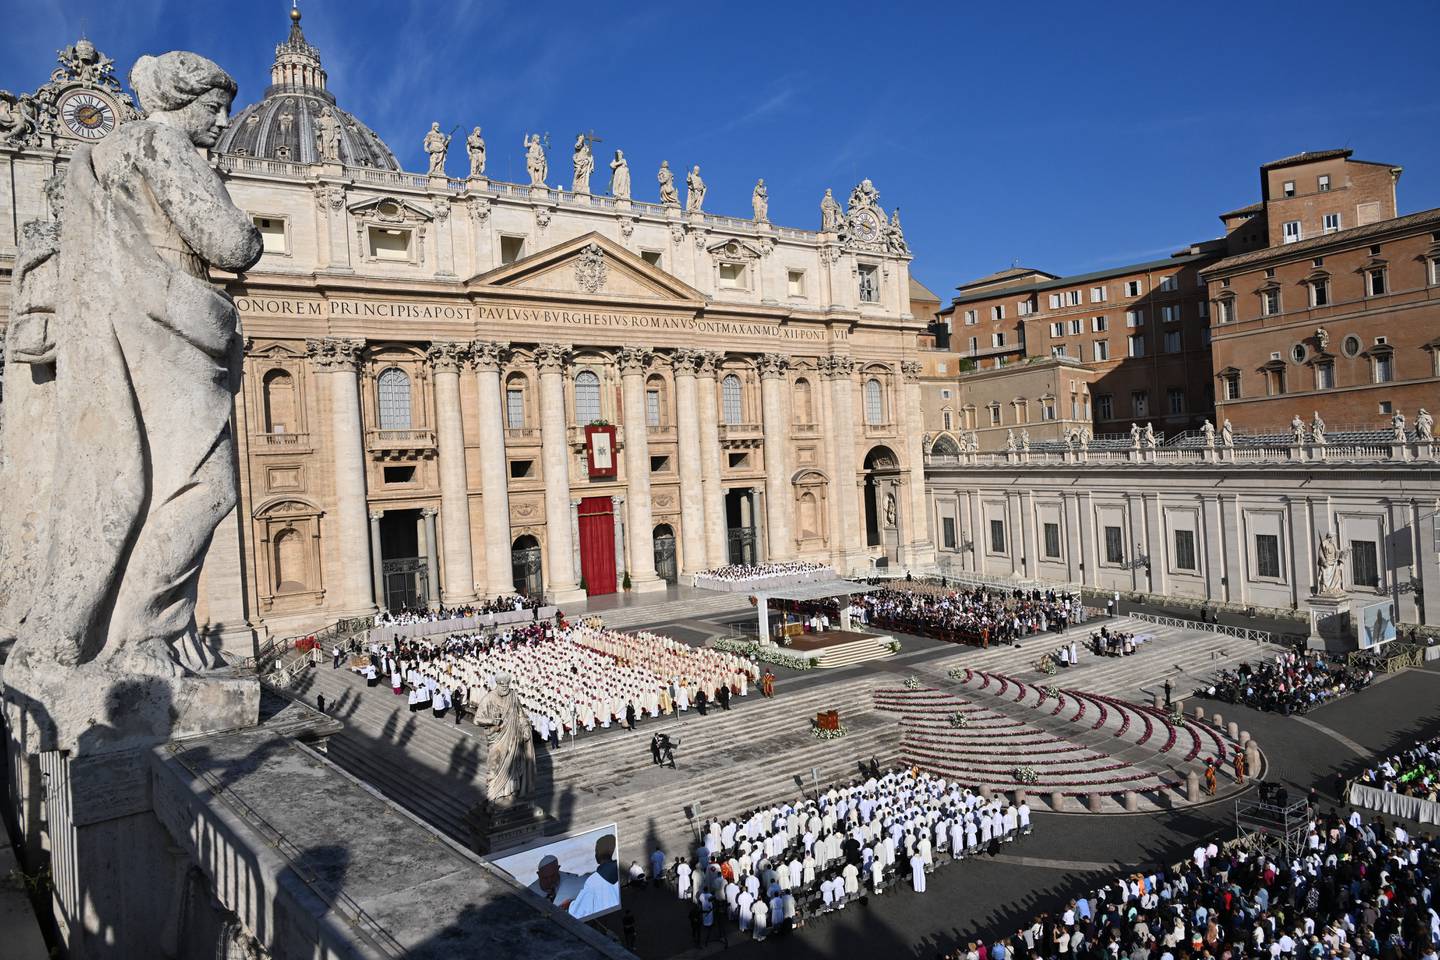 El Sínodo de los Obispos, un simposio mundial sobre el futuro de la Iglesia católica, comenzó en Roma después de dos años de consultas globales. El Papa Francisco inauguró el evento con un llamado a una Iglesia "hospitalaria" de "puertas abiertas a todos".